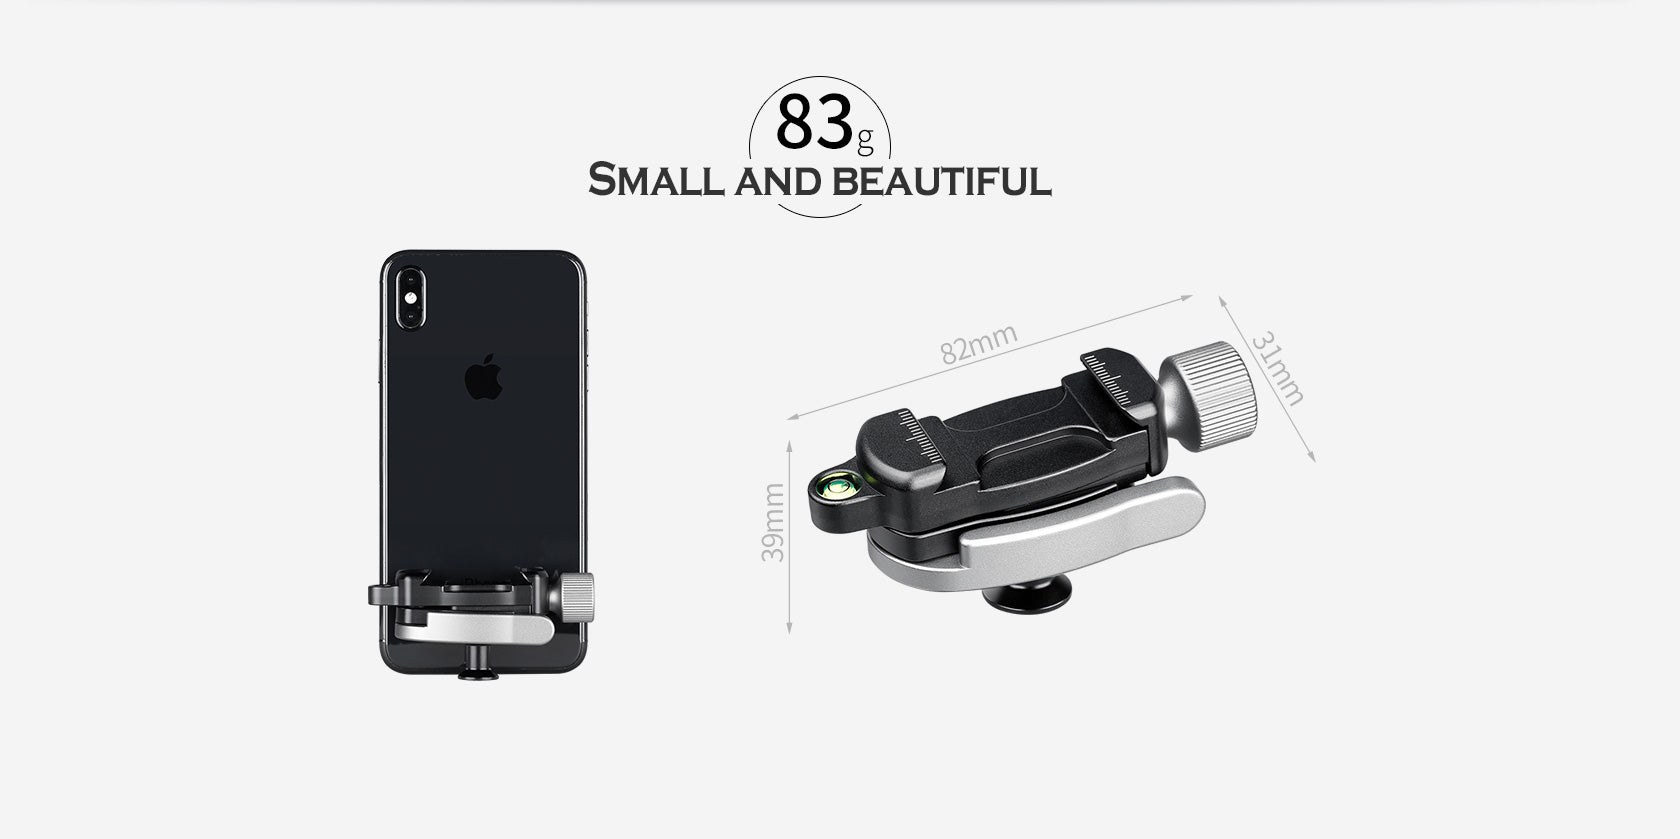 Leofoto Multipurpose Clamp Kit FA-01+ MBC-18 + PC-90II Mini Ballhead with Phone Clamp and Hot Shoe for Camera